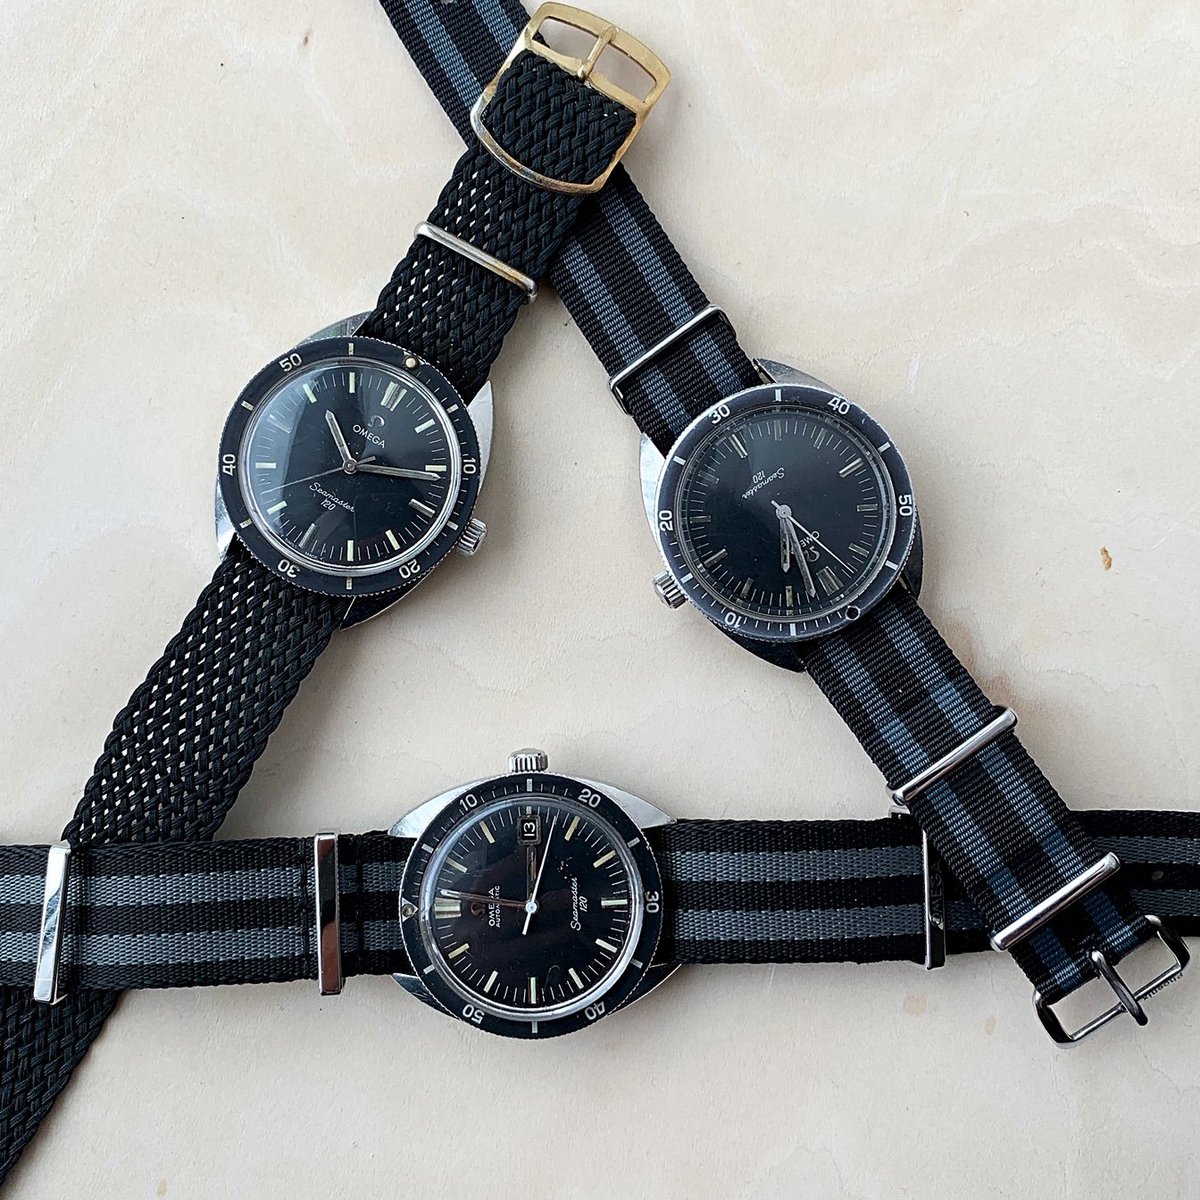 【OMEGA】 当店が一番得意とする時計 シーマスター120 ファーストモデル